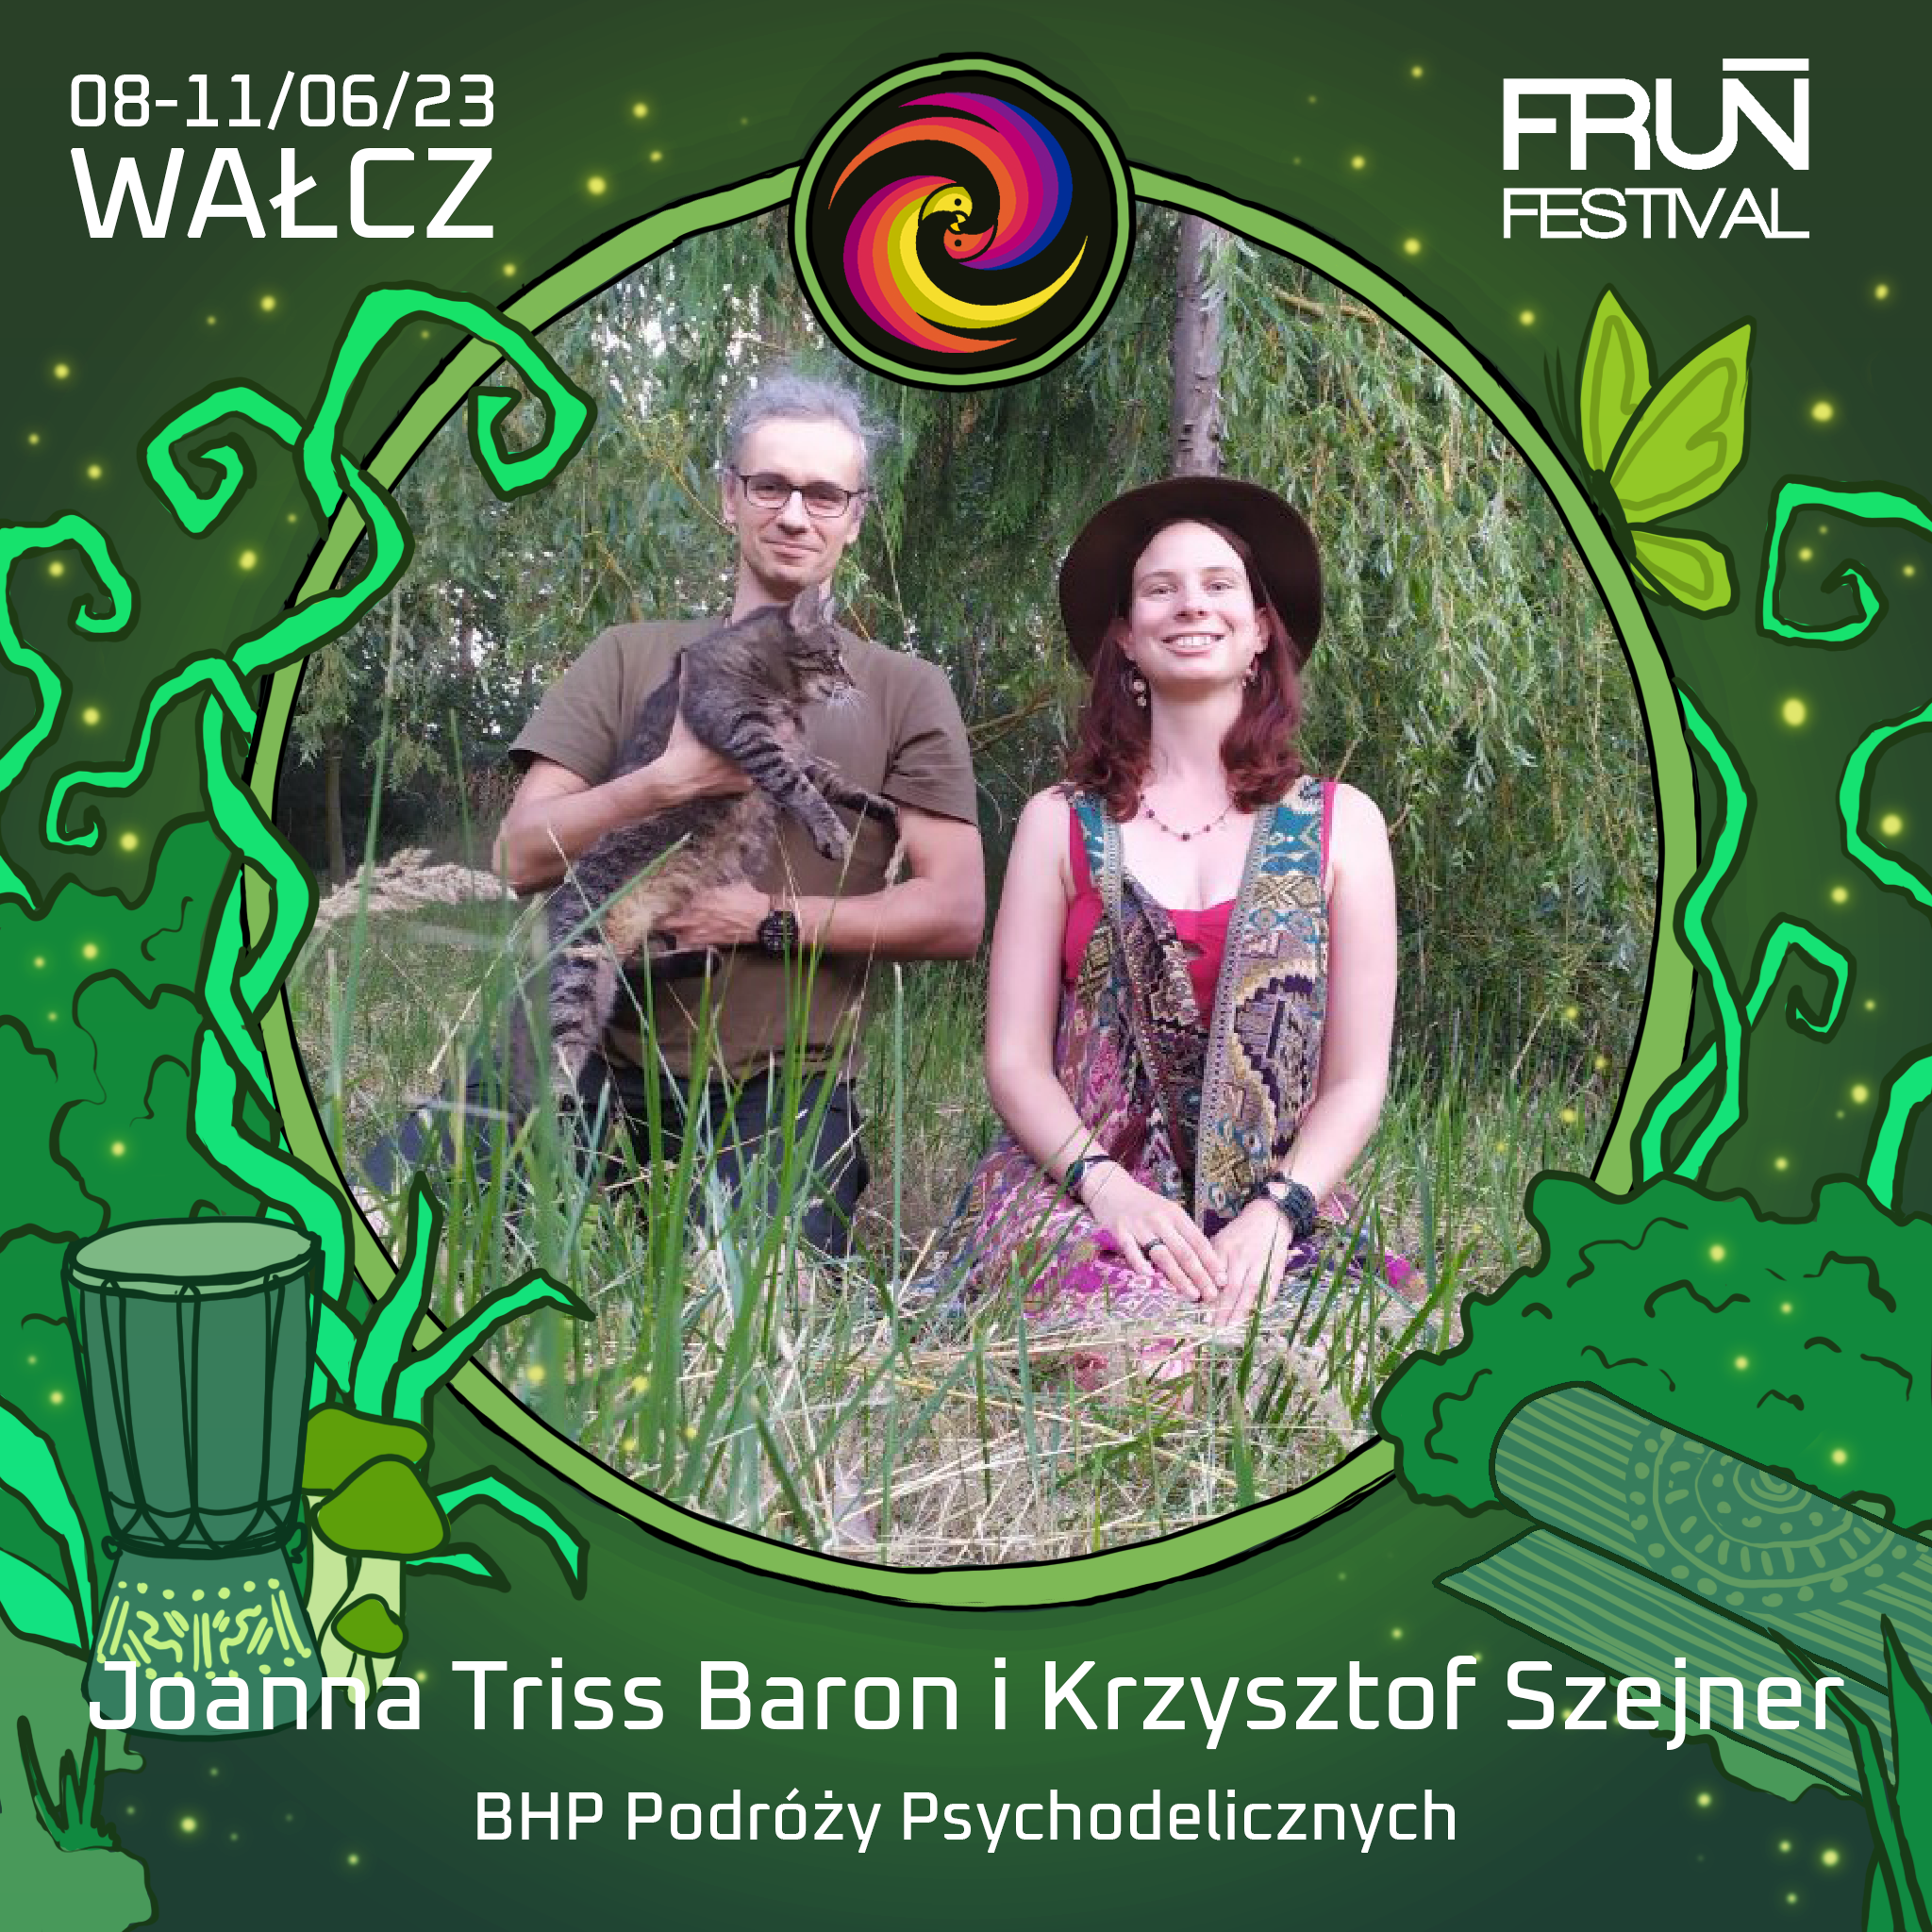 BHP Podróży Psychodelicznych - Joanna Triss Baron i Krzysztof Szejner